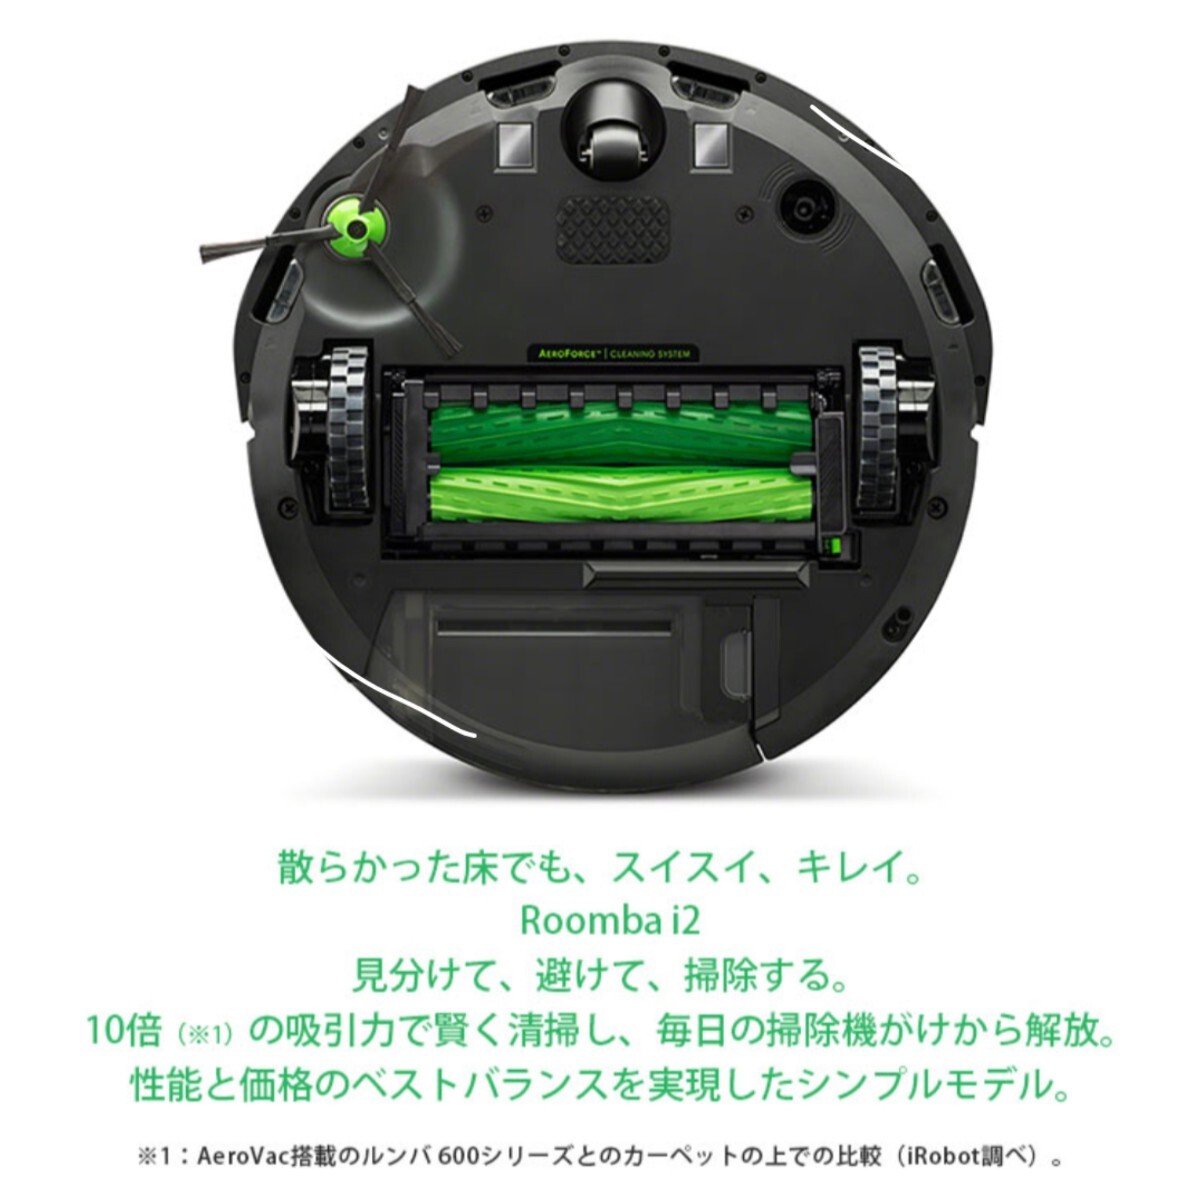 ルンバ i2 アイロボット ロボット掃除機 ロボット 掃除機 コードレス 家電 強力吸引 自動充電 機能 搭載 irobot roomba 日本 国内 正規品_画像3